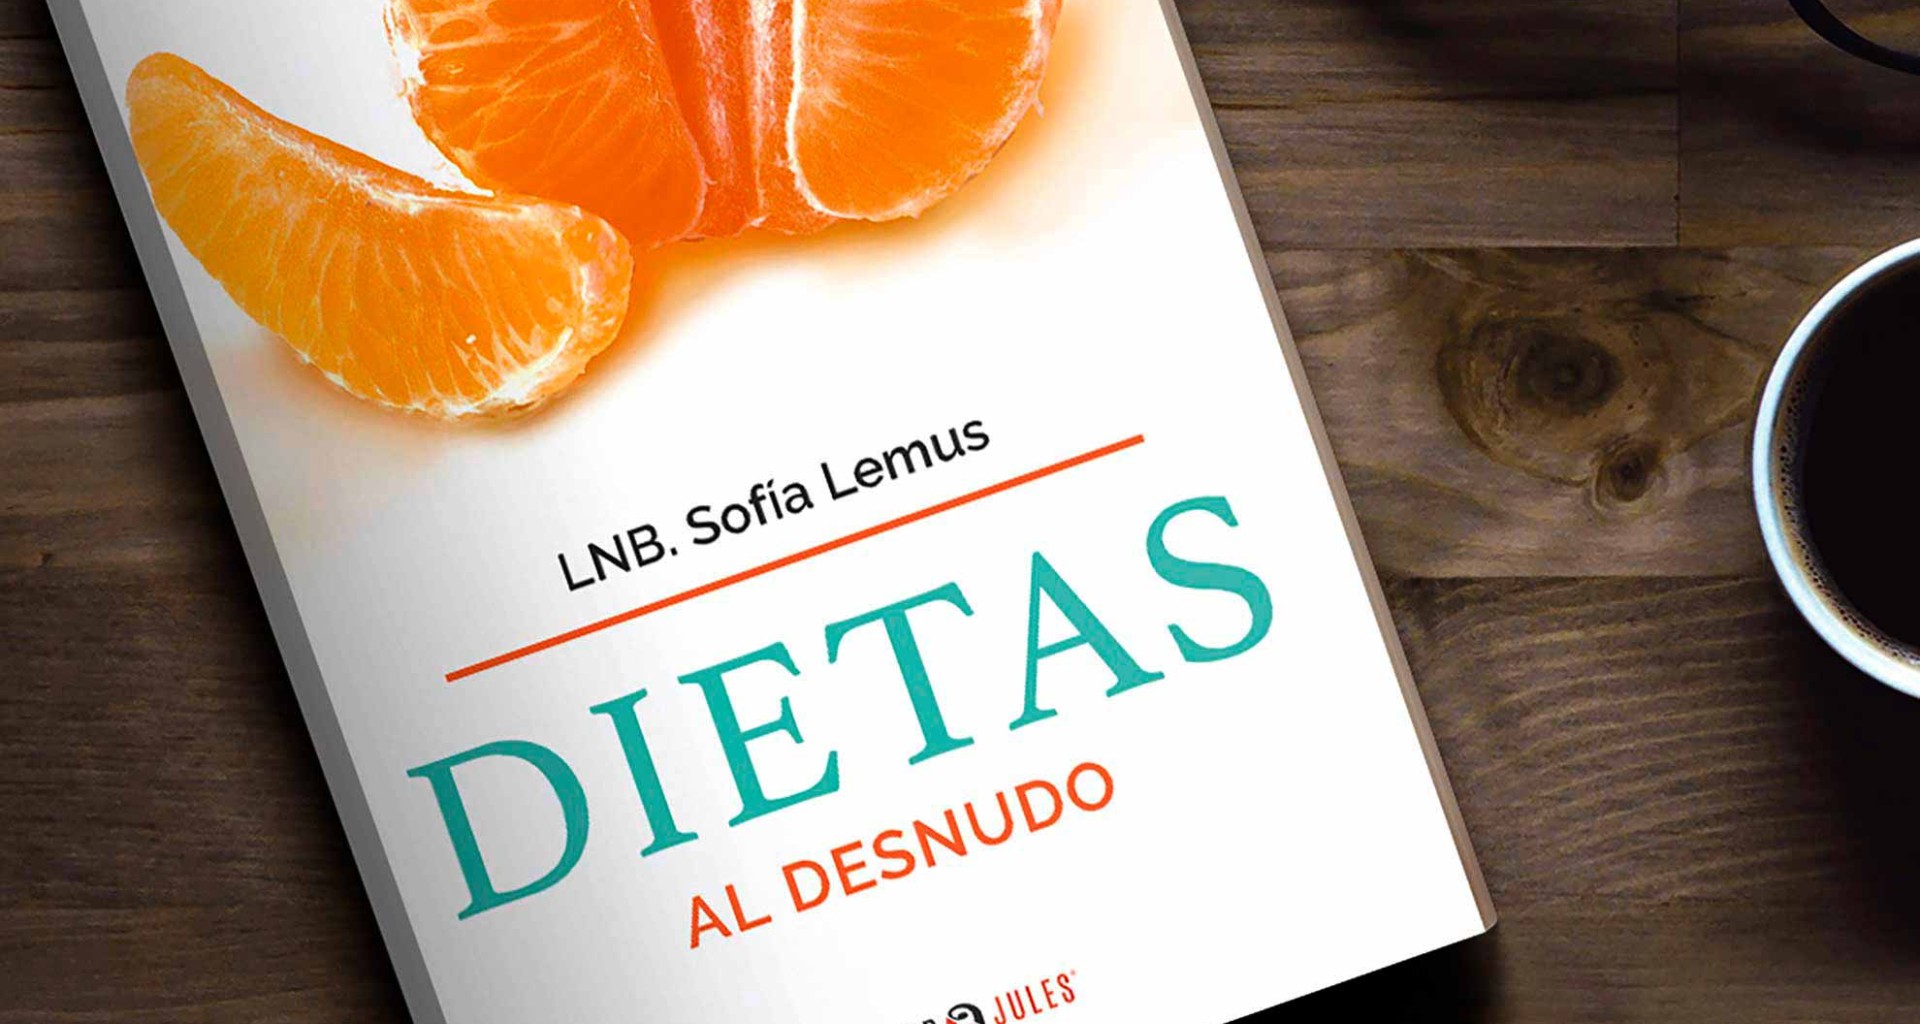 Egresada del Tec publica libro sobre dietas de la actualidad.